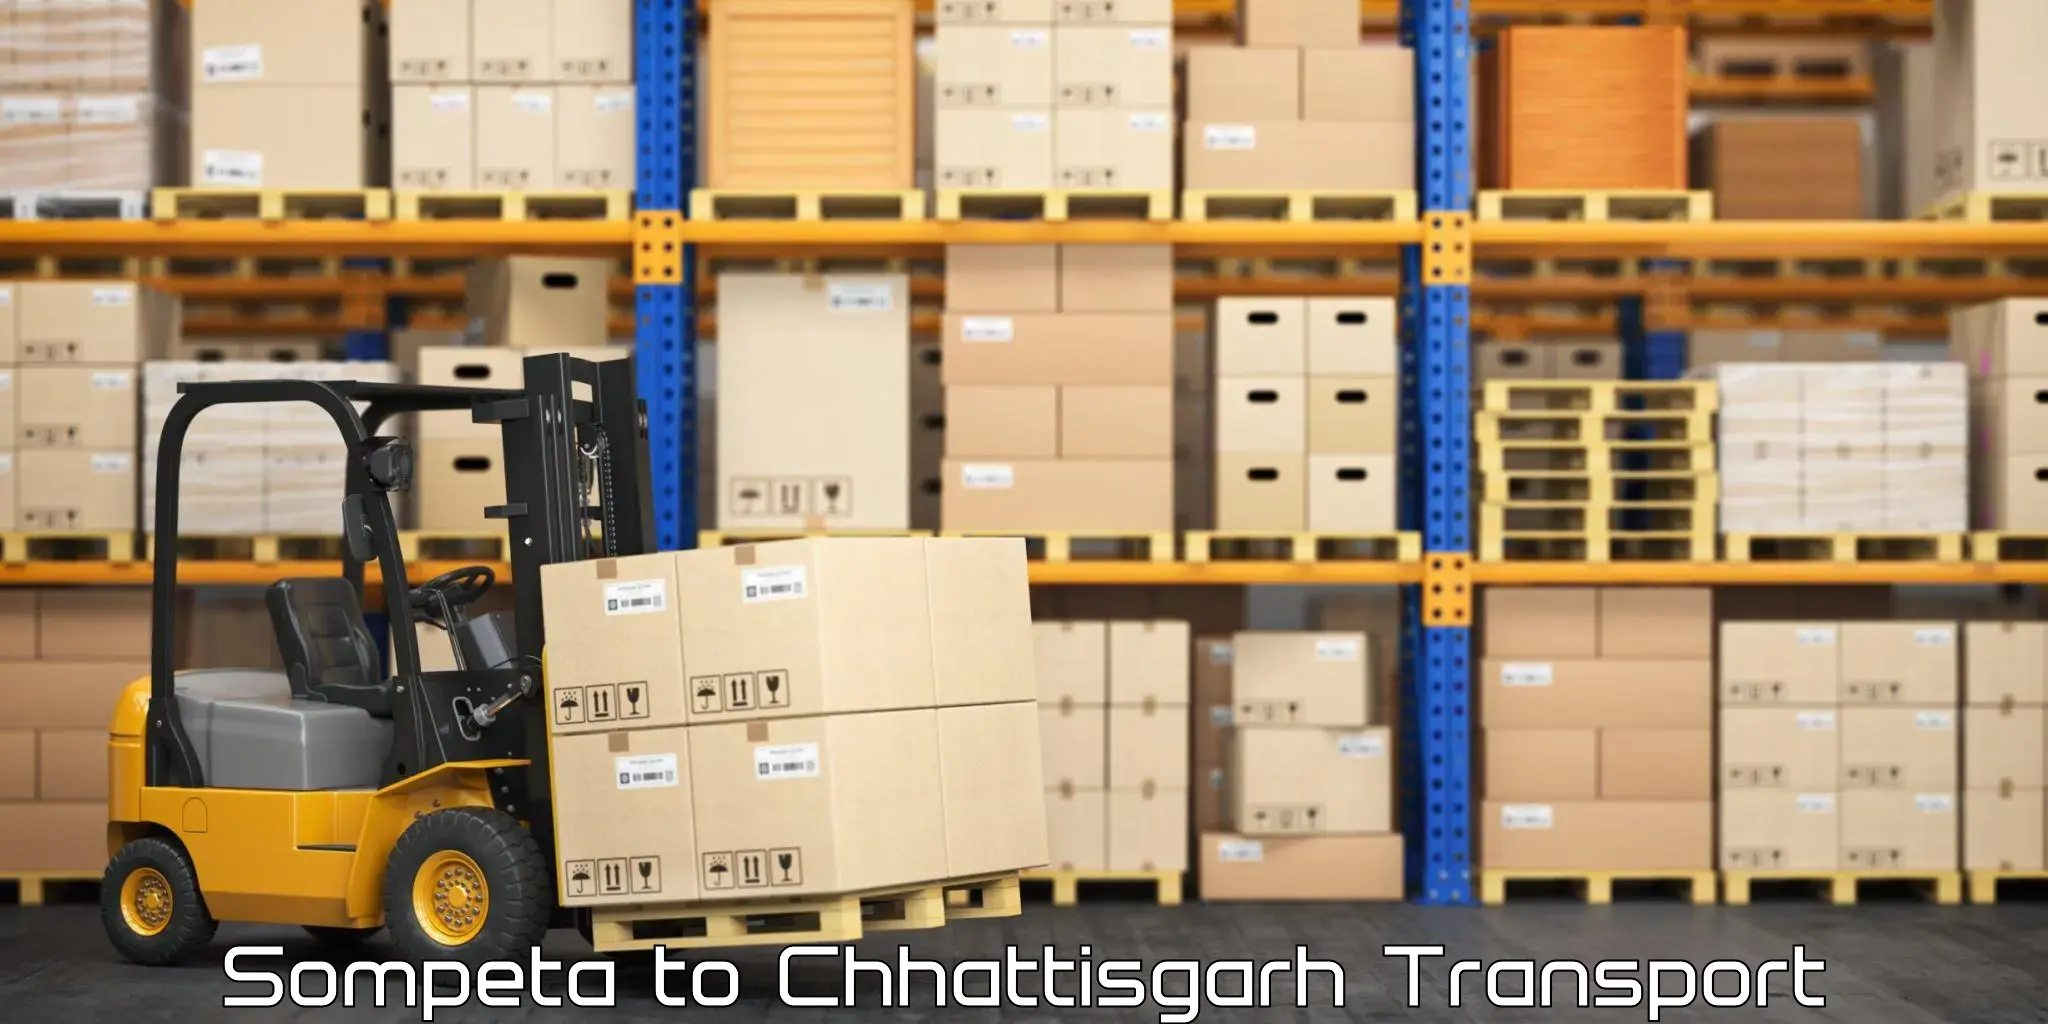 Delivery service Sompeta to Chhattisgarh